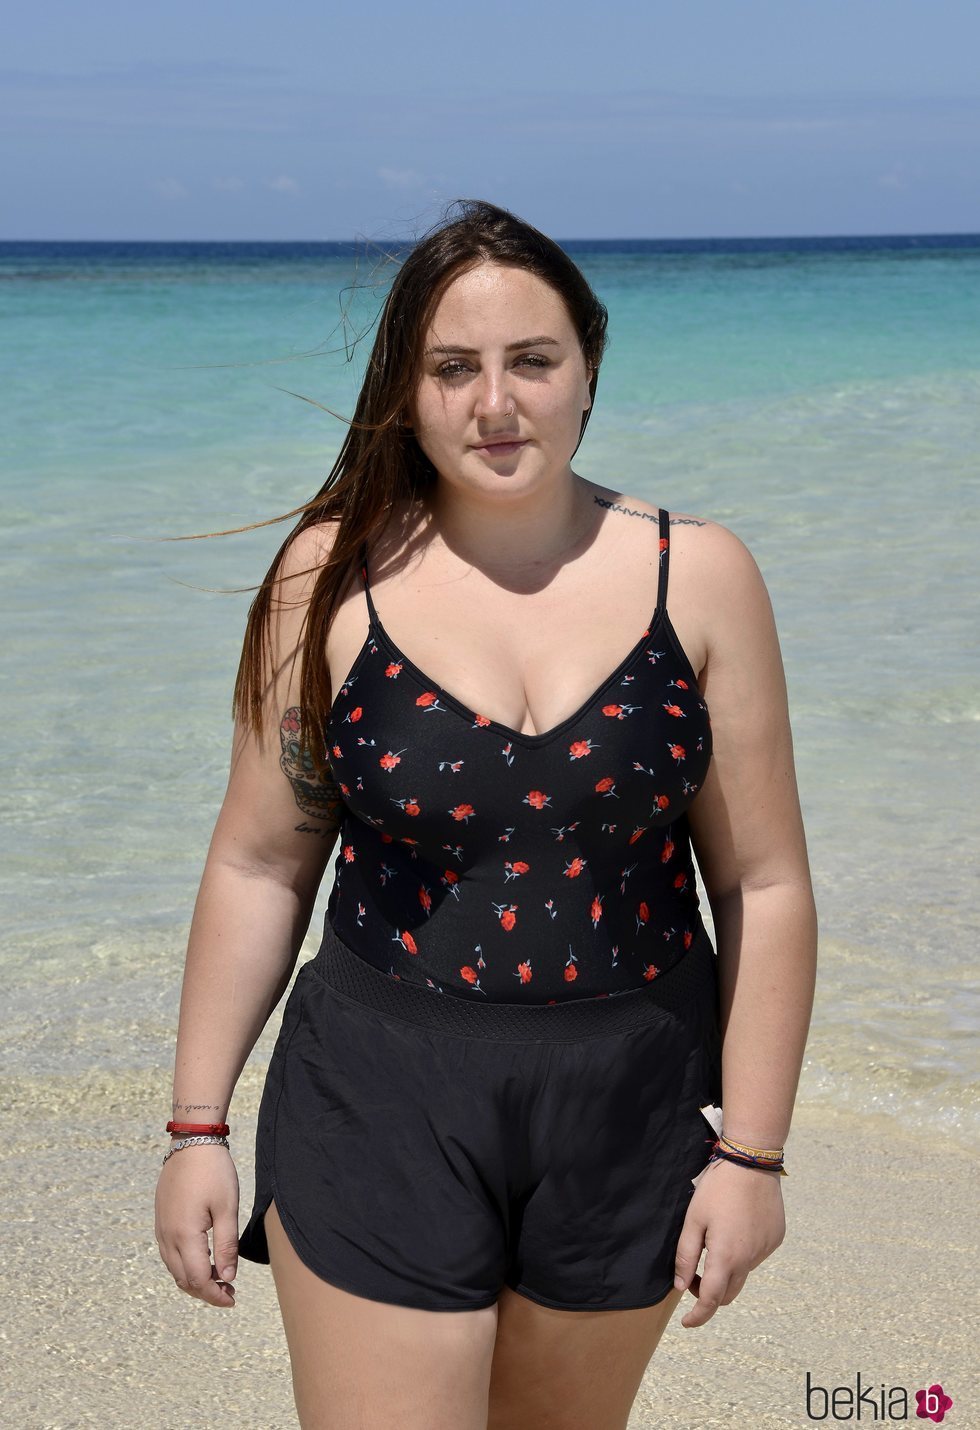 Rocío Flores posando en la playa en la foto oficial de 'Supervivientes 2020'